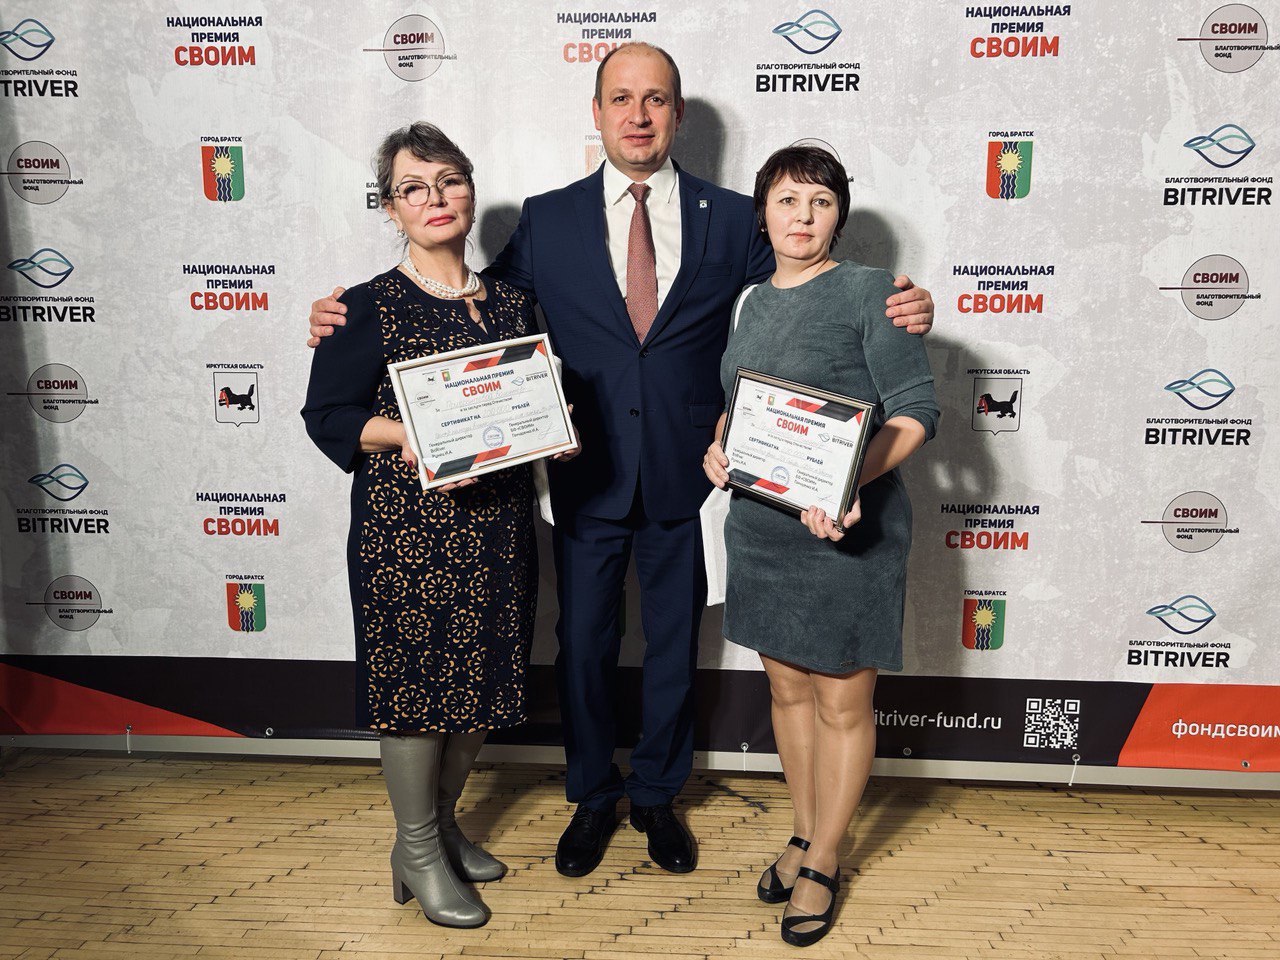 Жители Братского района награждены национальной премией "Своим"